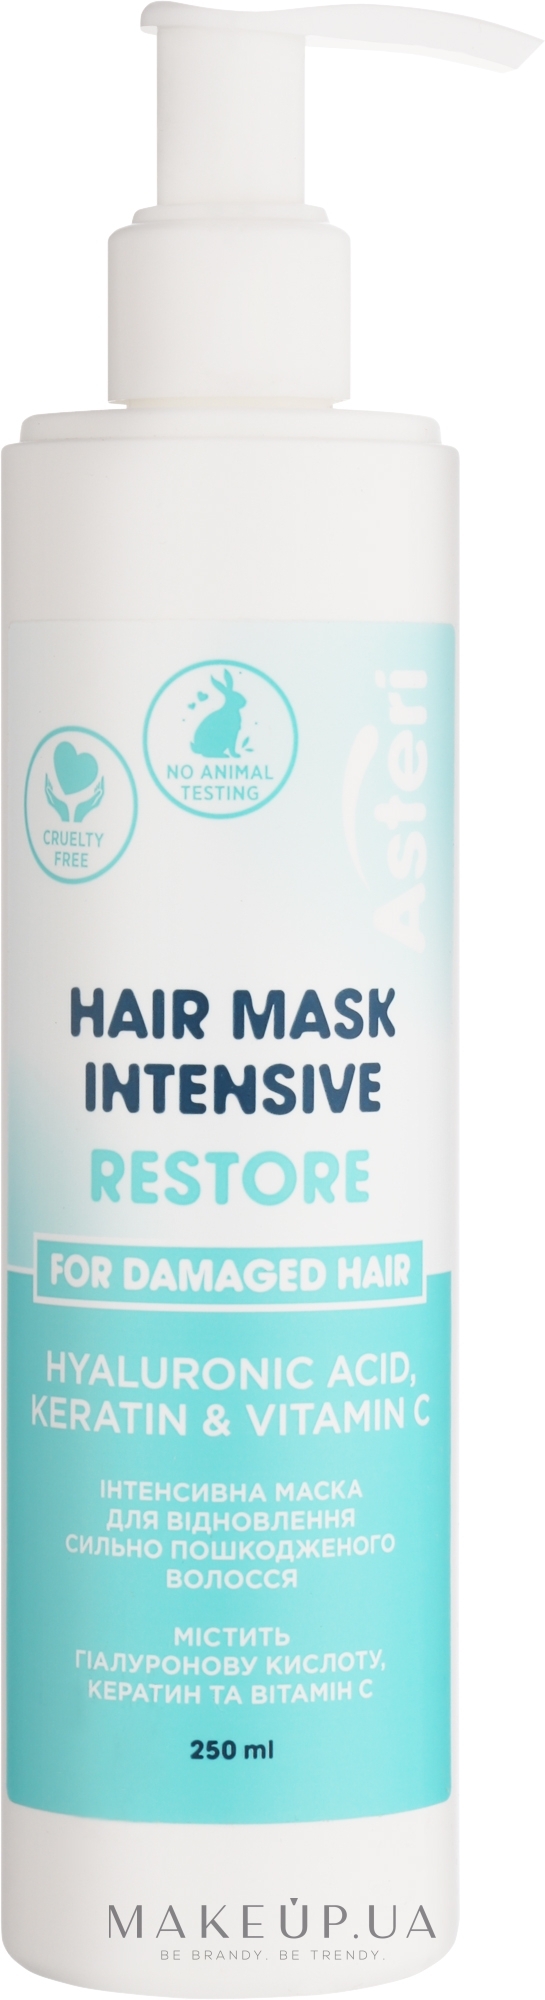 Интенсивная маска для восстановления сильно поврежденных волос - Asteri Restore Intensive Hair Mask — фото 250ml